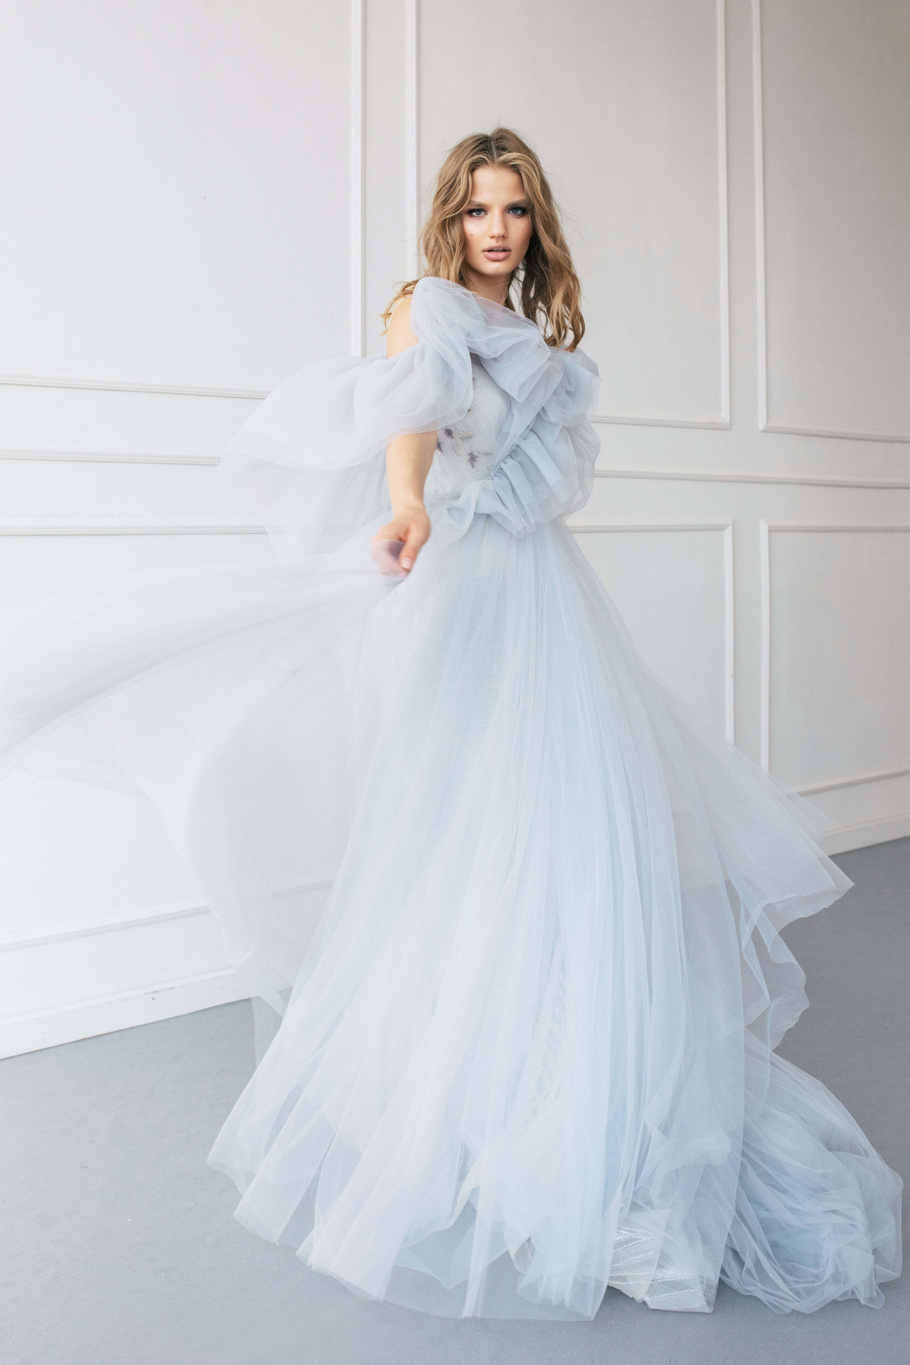 Купить свадебное платье «Айрин+Аманда» Анже Этуаль из коллекции 2020 года в салоне «Мэри Трюфель»